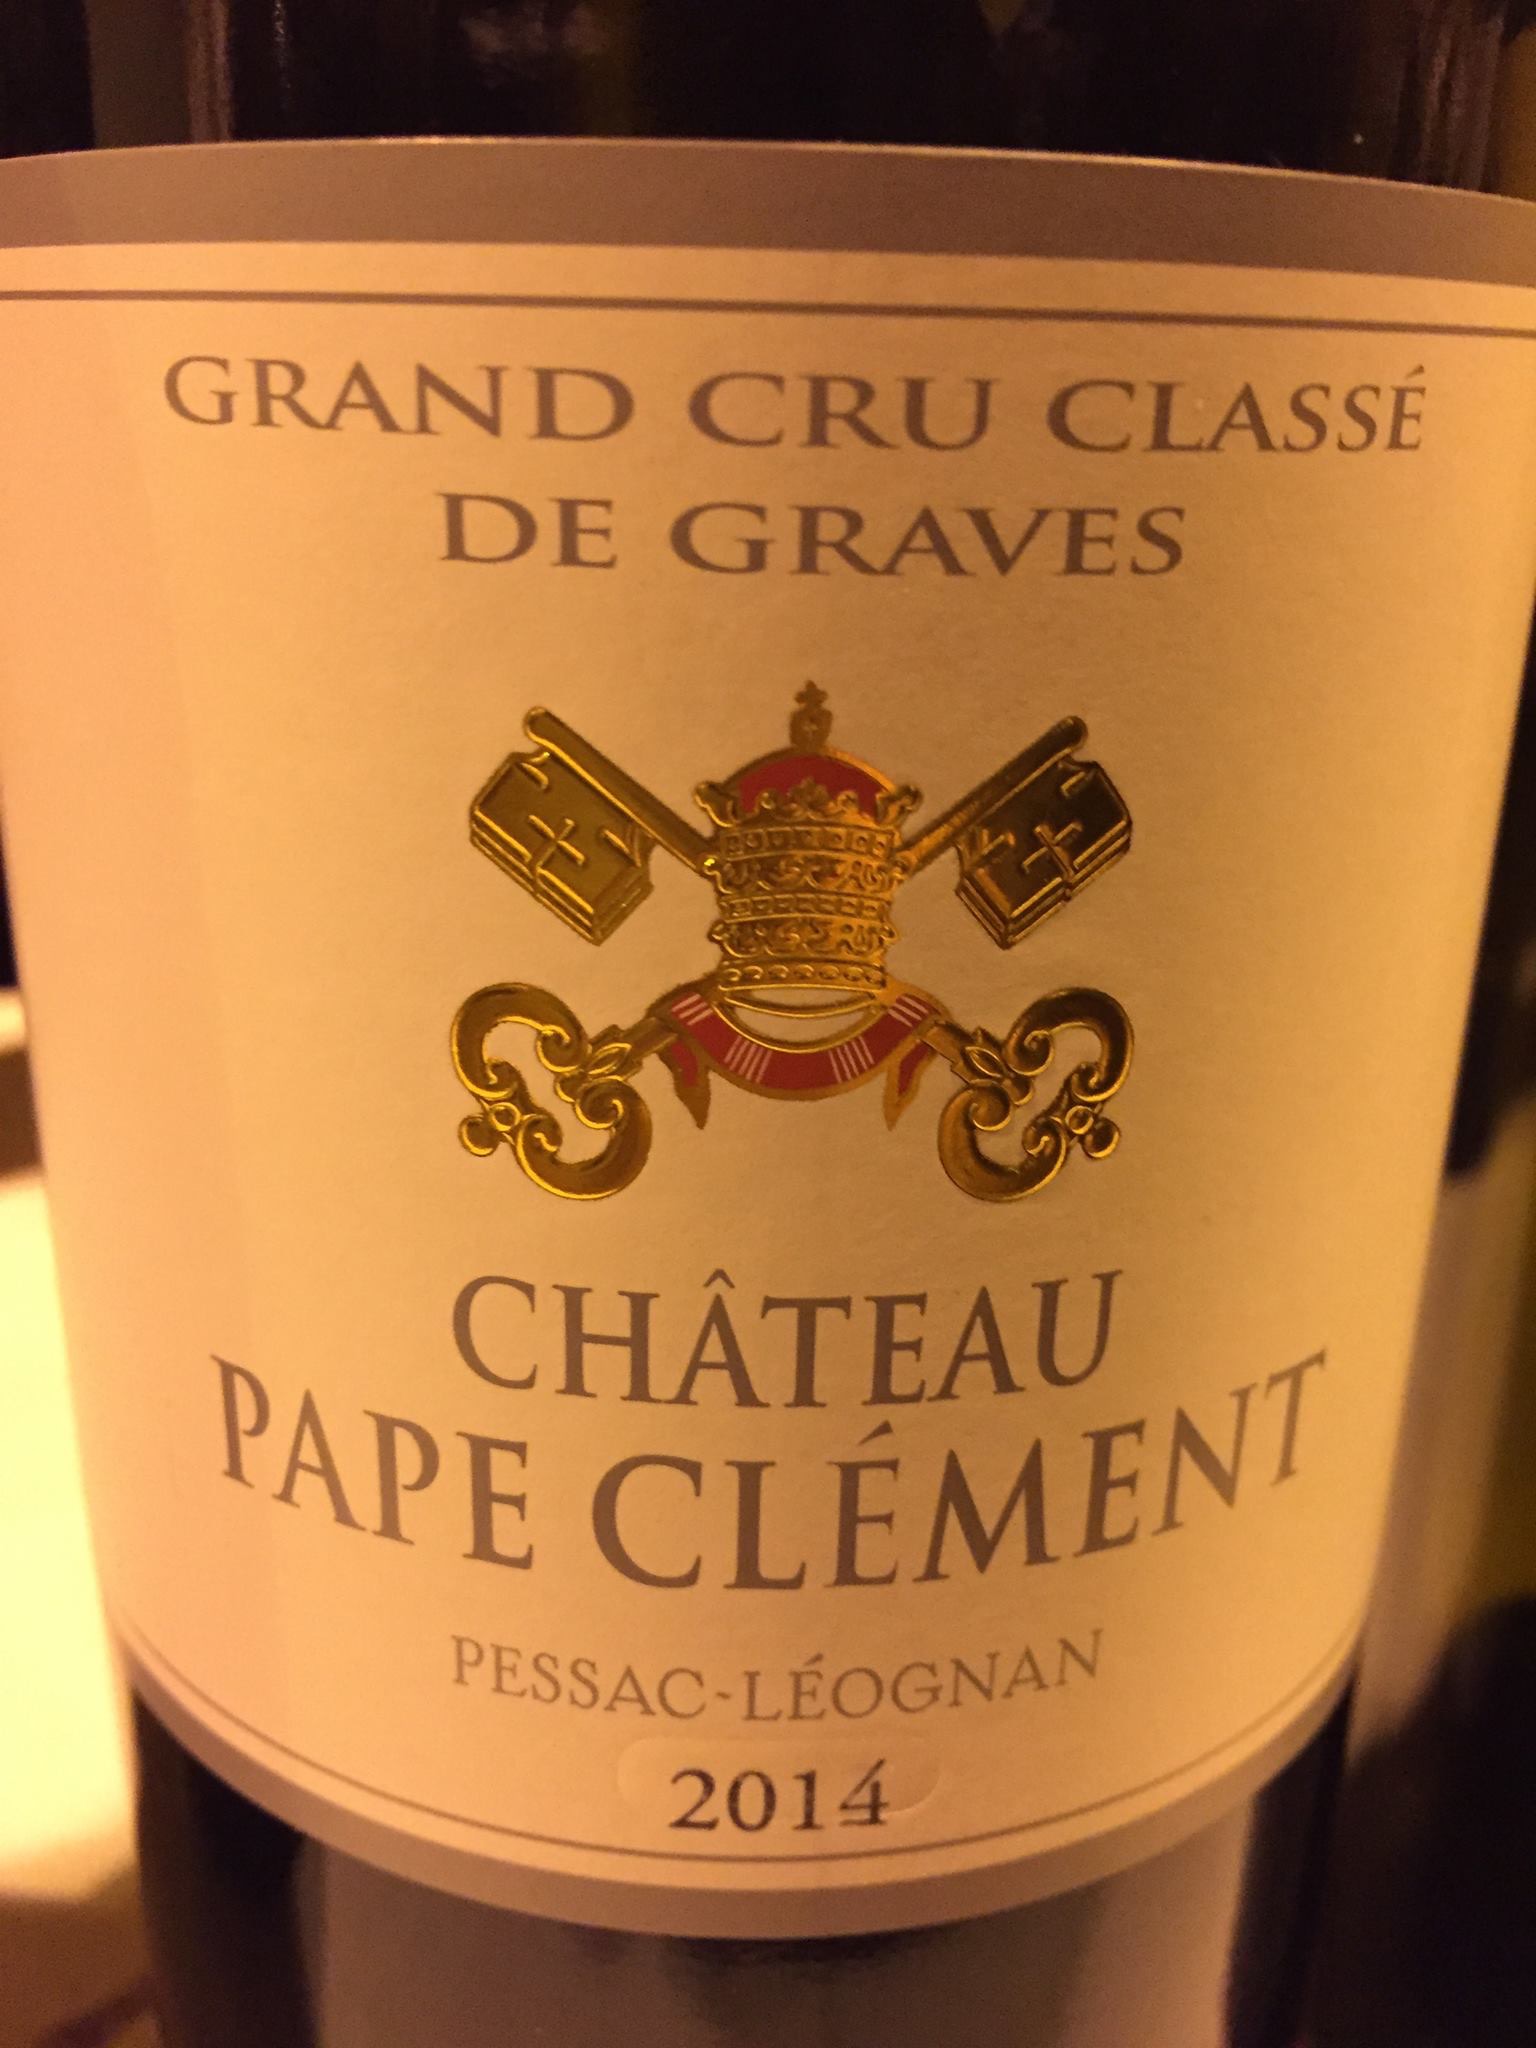 Château Pape Clément 2014 – Pessac-Léognan, Grand Cru Classé de Graves